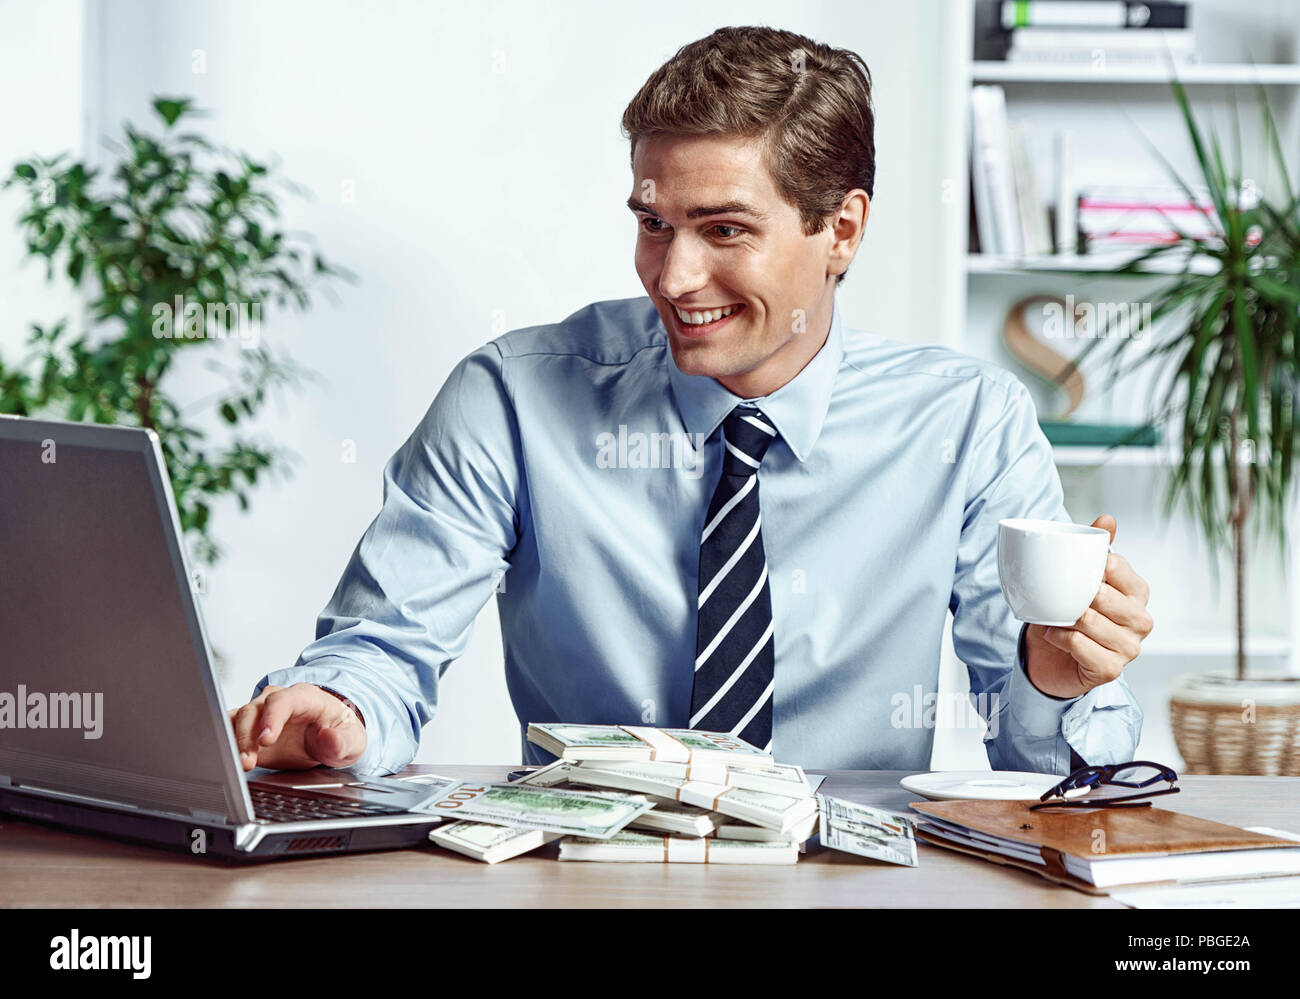 Arbeiter auf dem Laptop und Kaffee zu trinken. Foto der glückliche junge Mann bei der Arbeit im Büro. Business Konzept Stockfoto